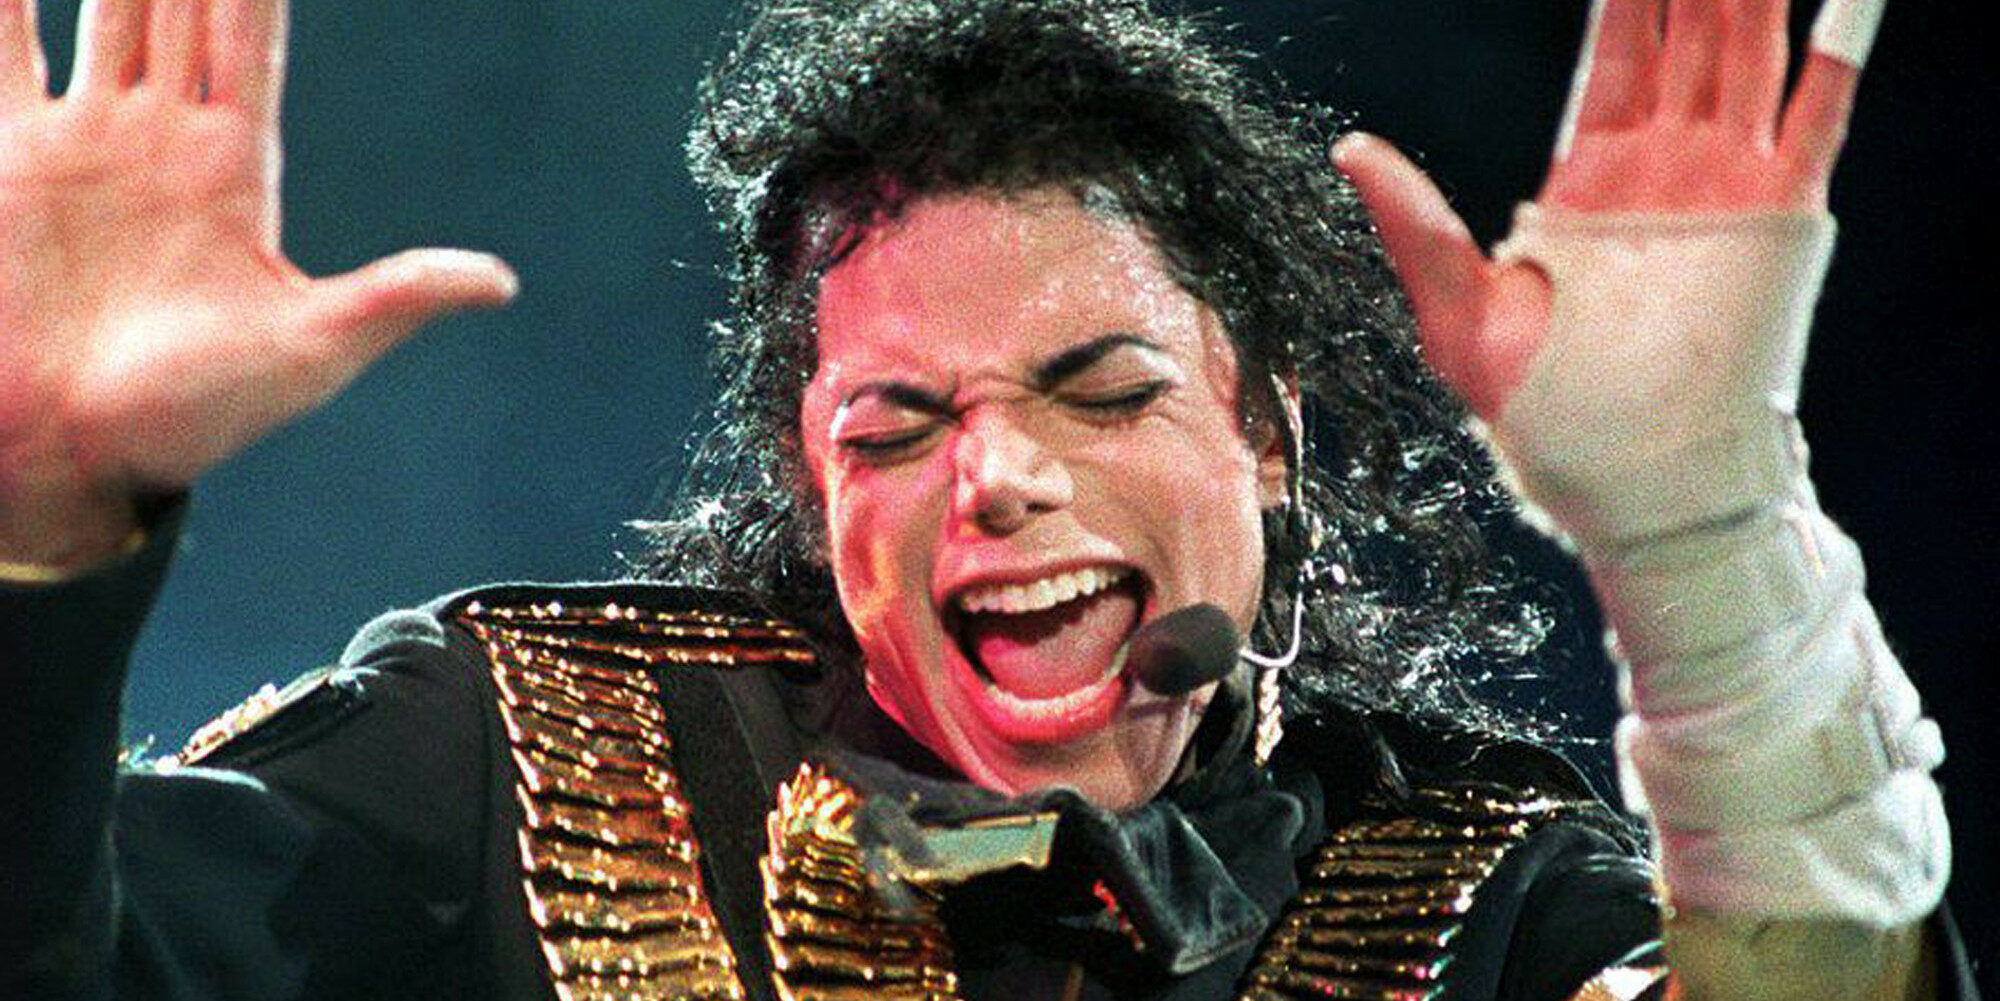 Michael Jackson : son ancien garde du corps révèle son amour méconnu